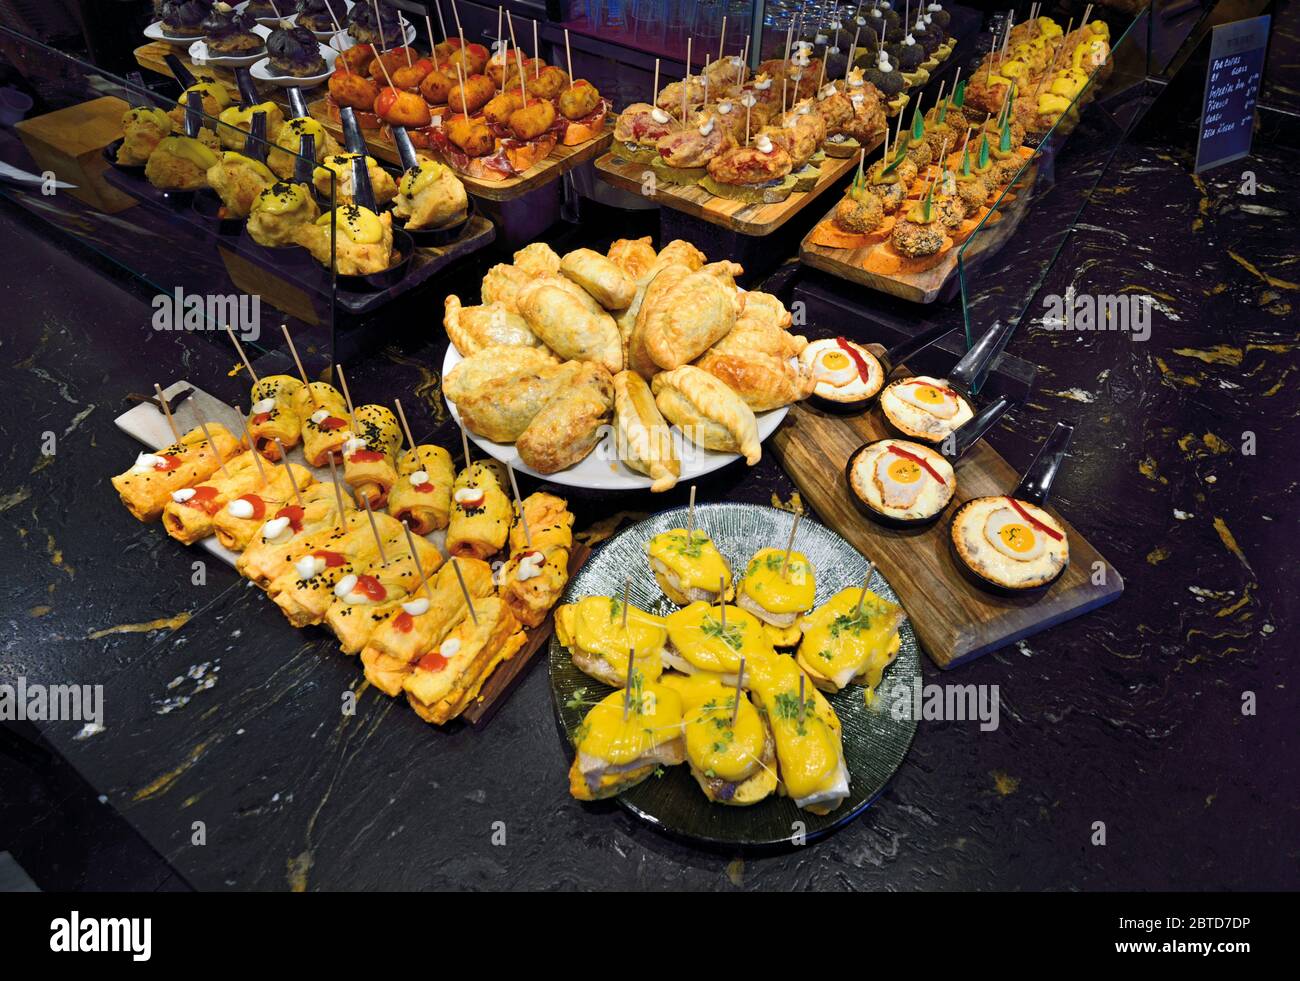 Auswahl an Fingerfood und Snacks (Pintxos) in einer typischen baskischen Pintxos Bar Stockfoto